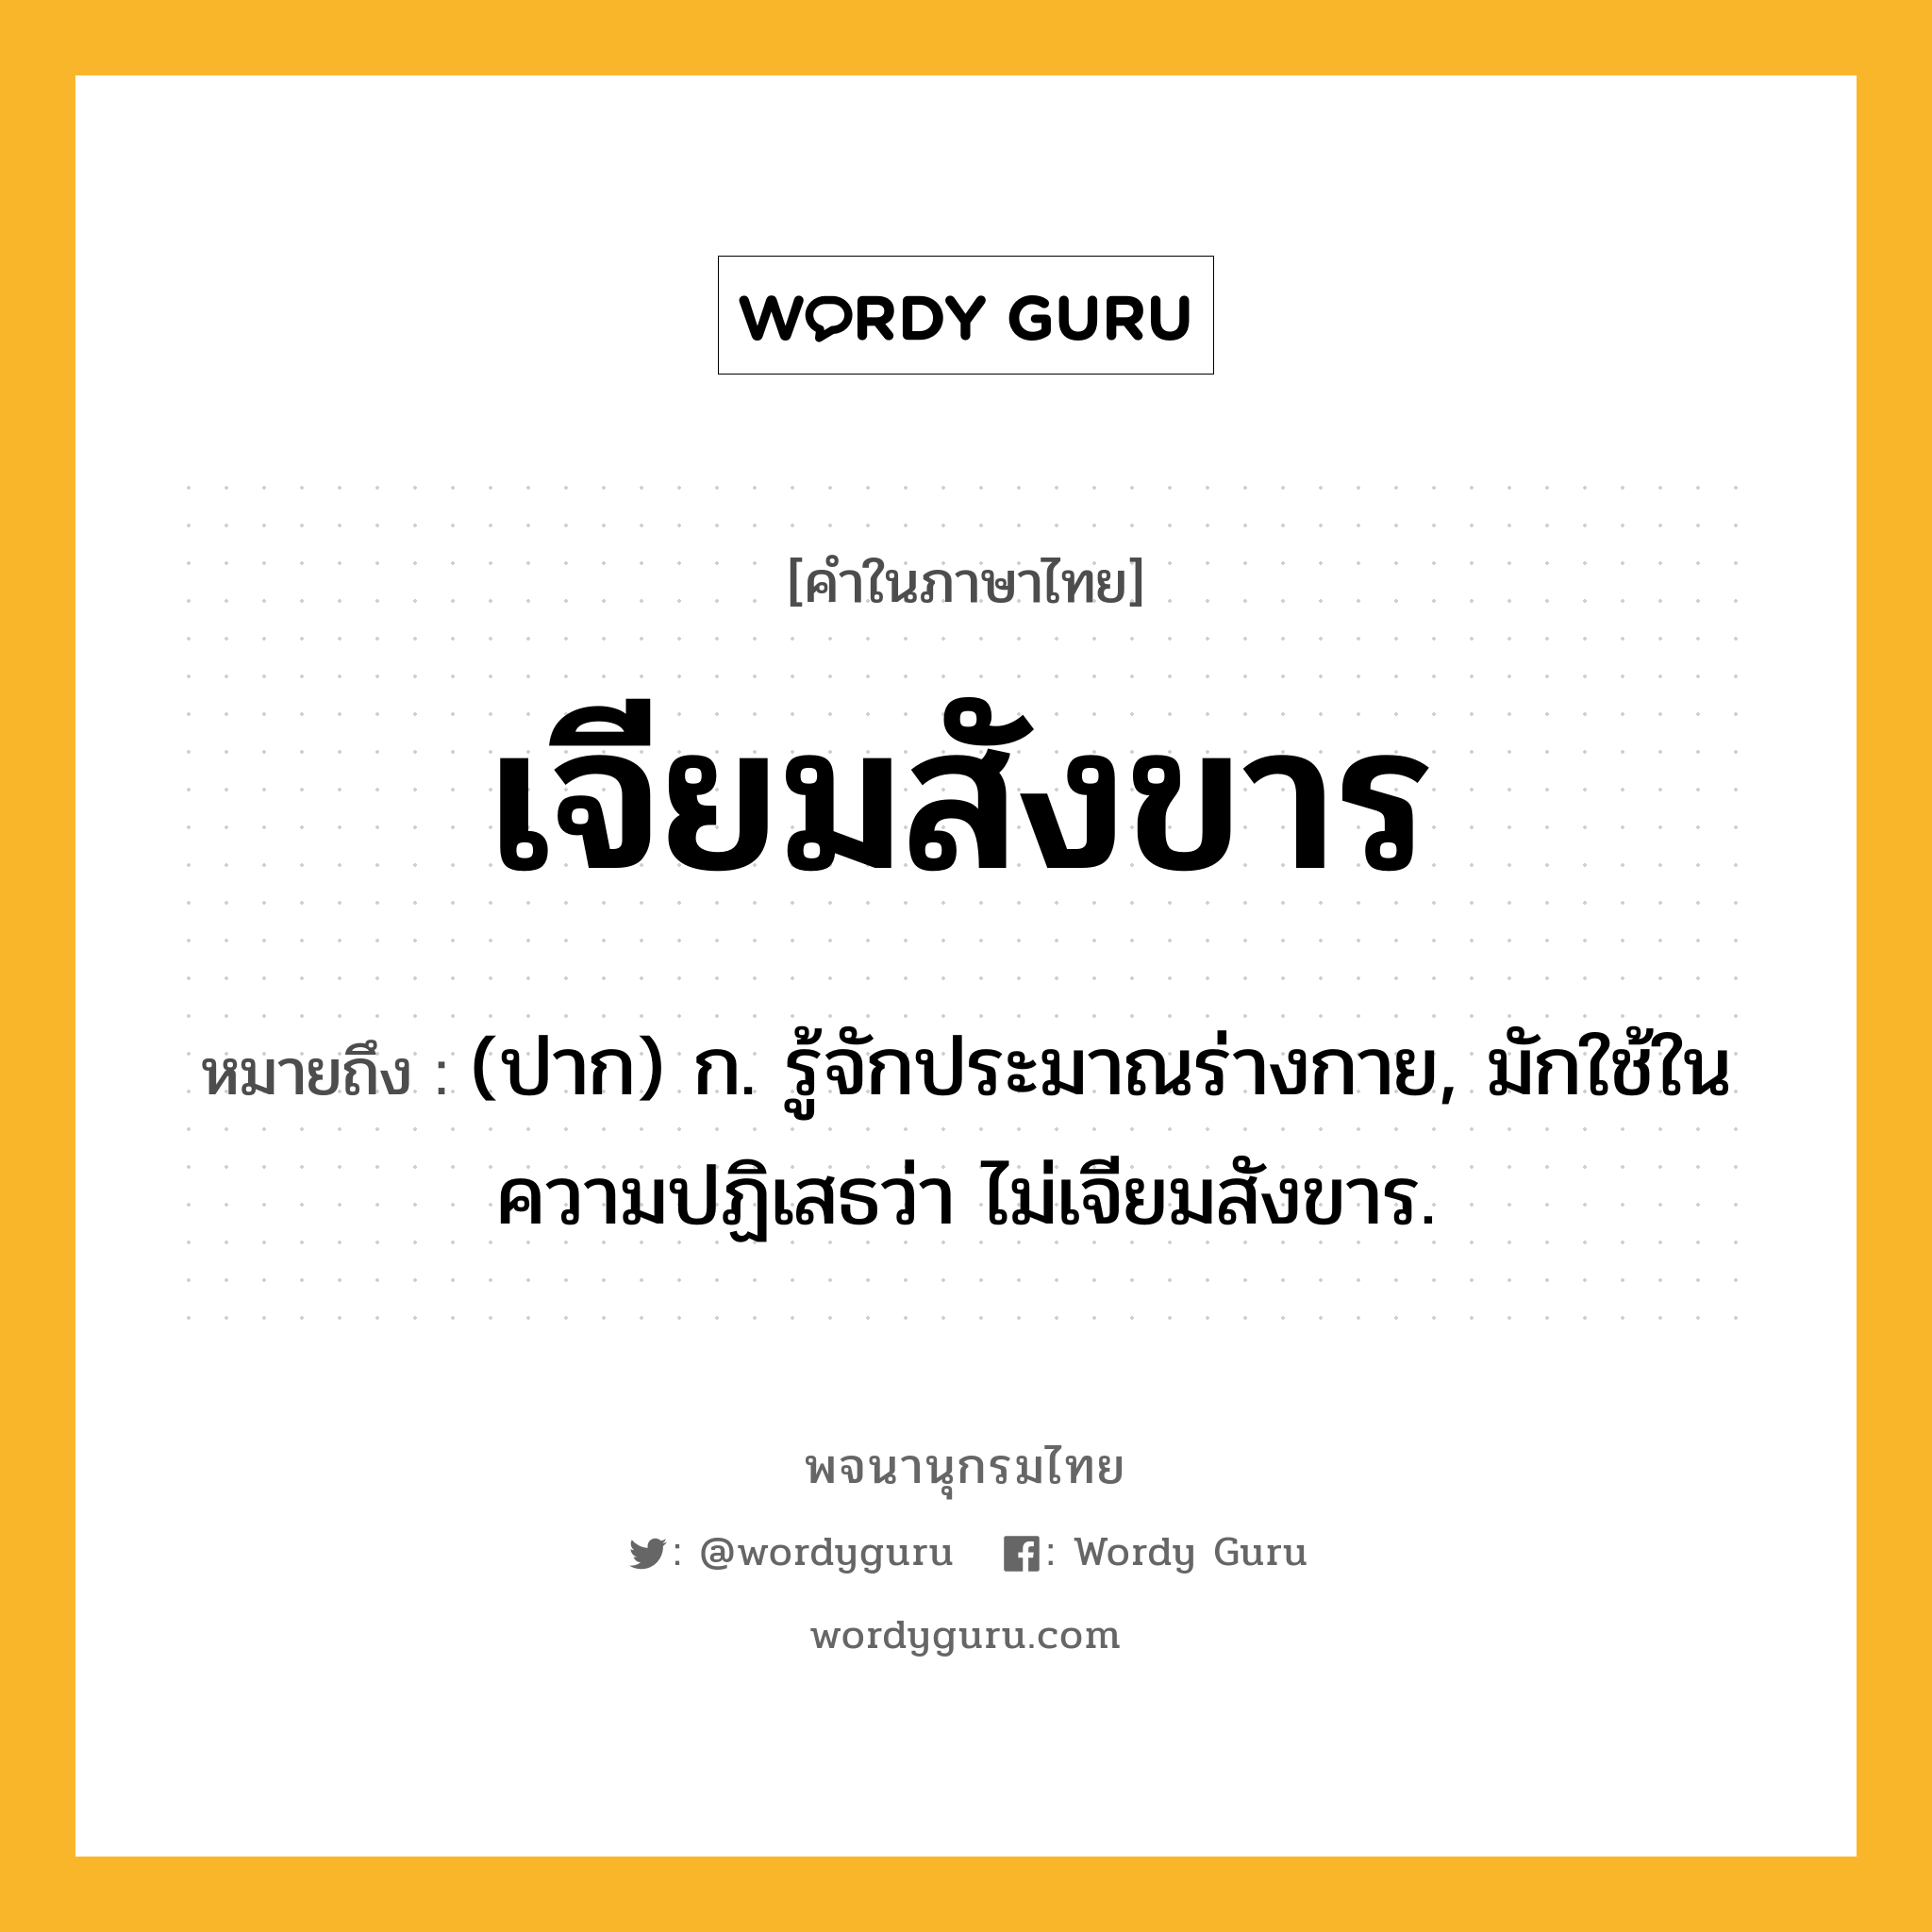 เจียมสังขาร หมายถึงอะไร?, คำในภาษาไทย เจียมสังขาร หมายถึง (ปาก) ก. รู้จักประมาณร่างกาย, มักใช้ในความปฏิเสธว่า ไม่เจียมสังขาร.